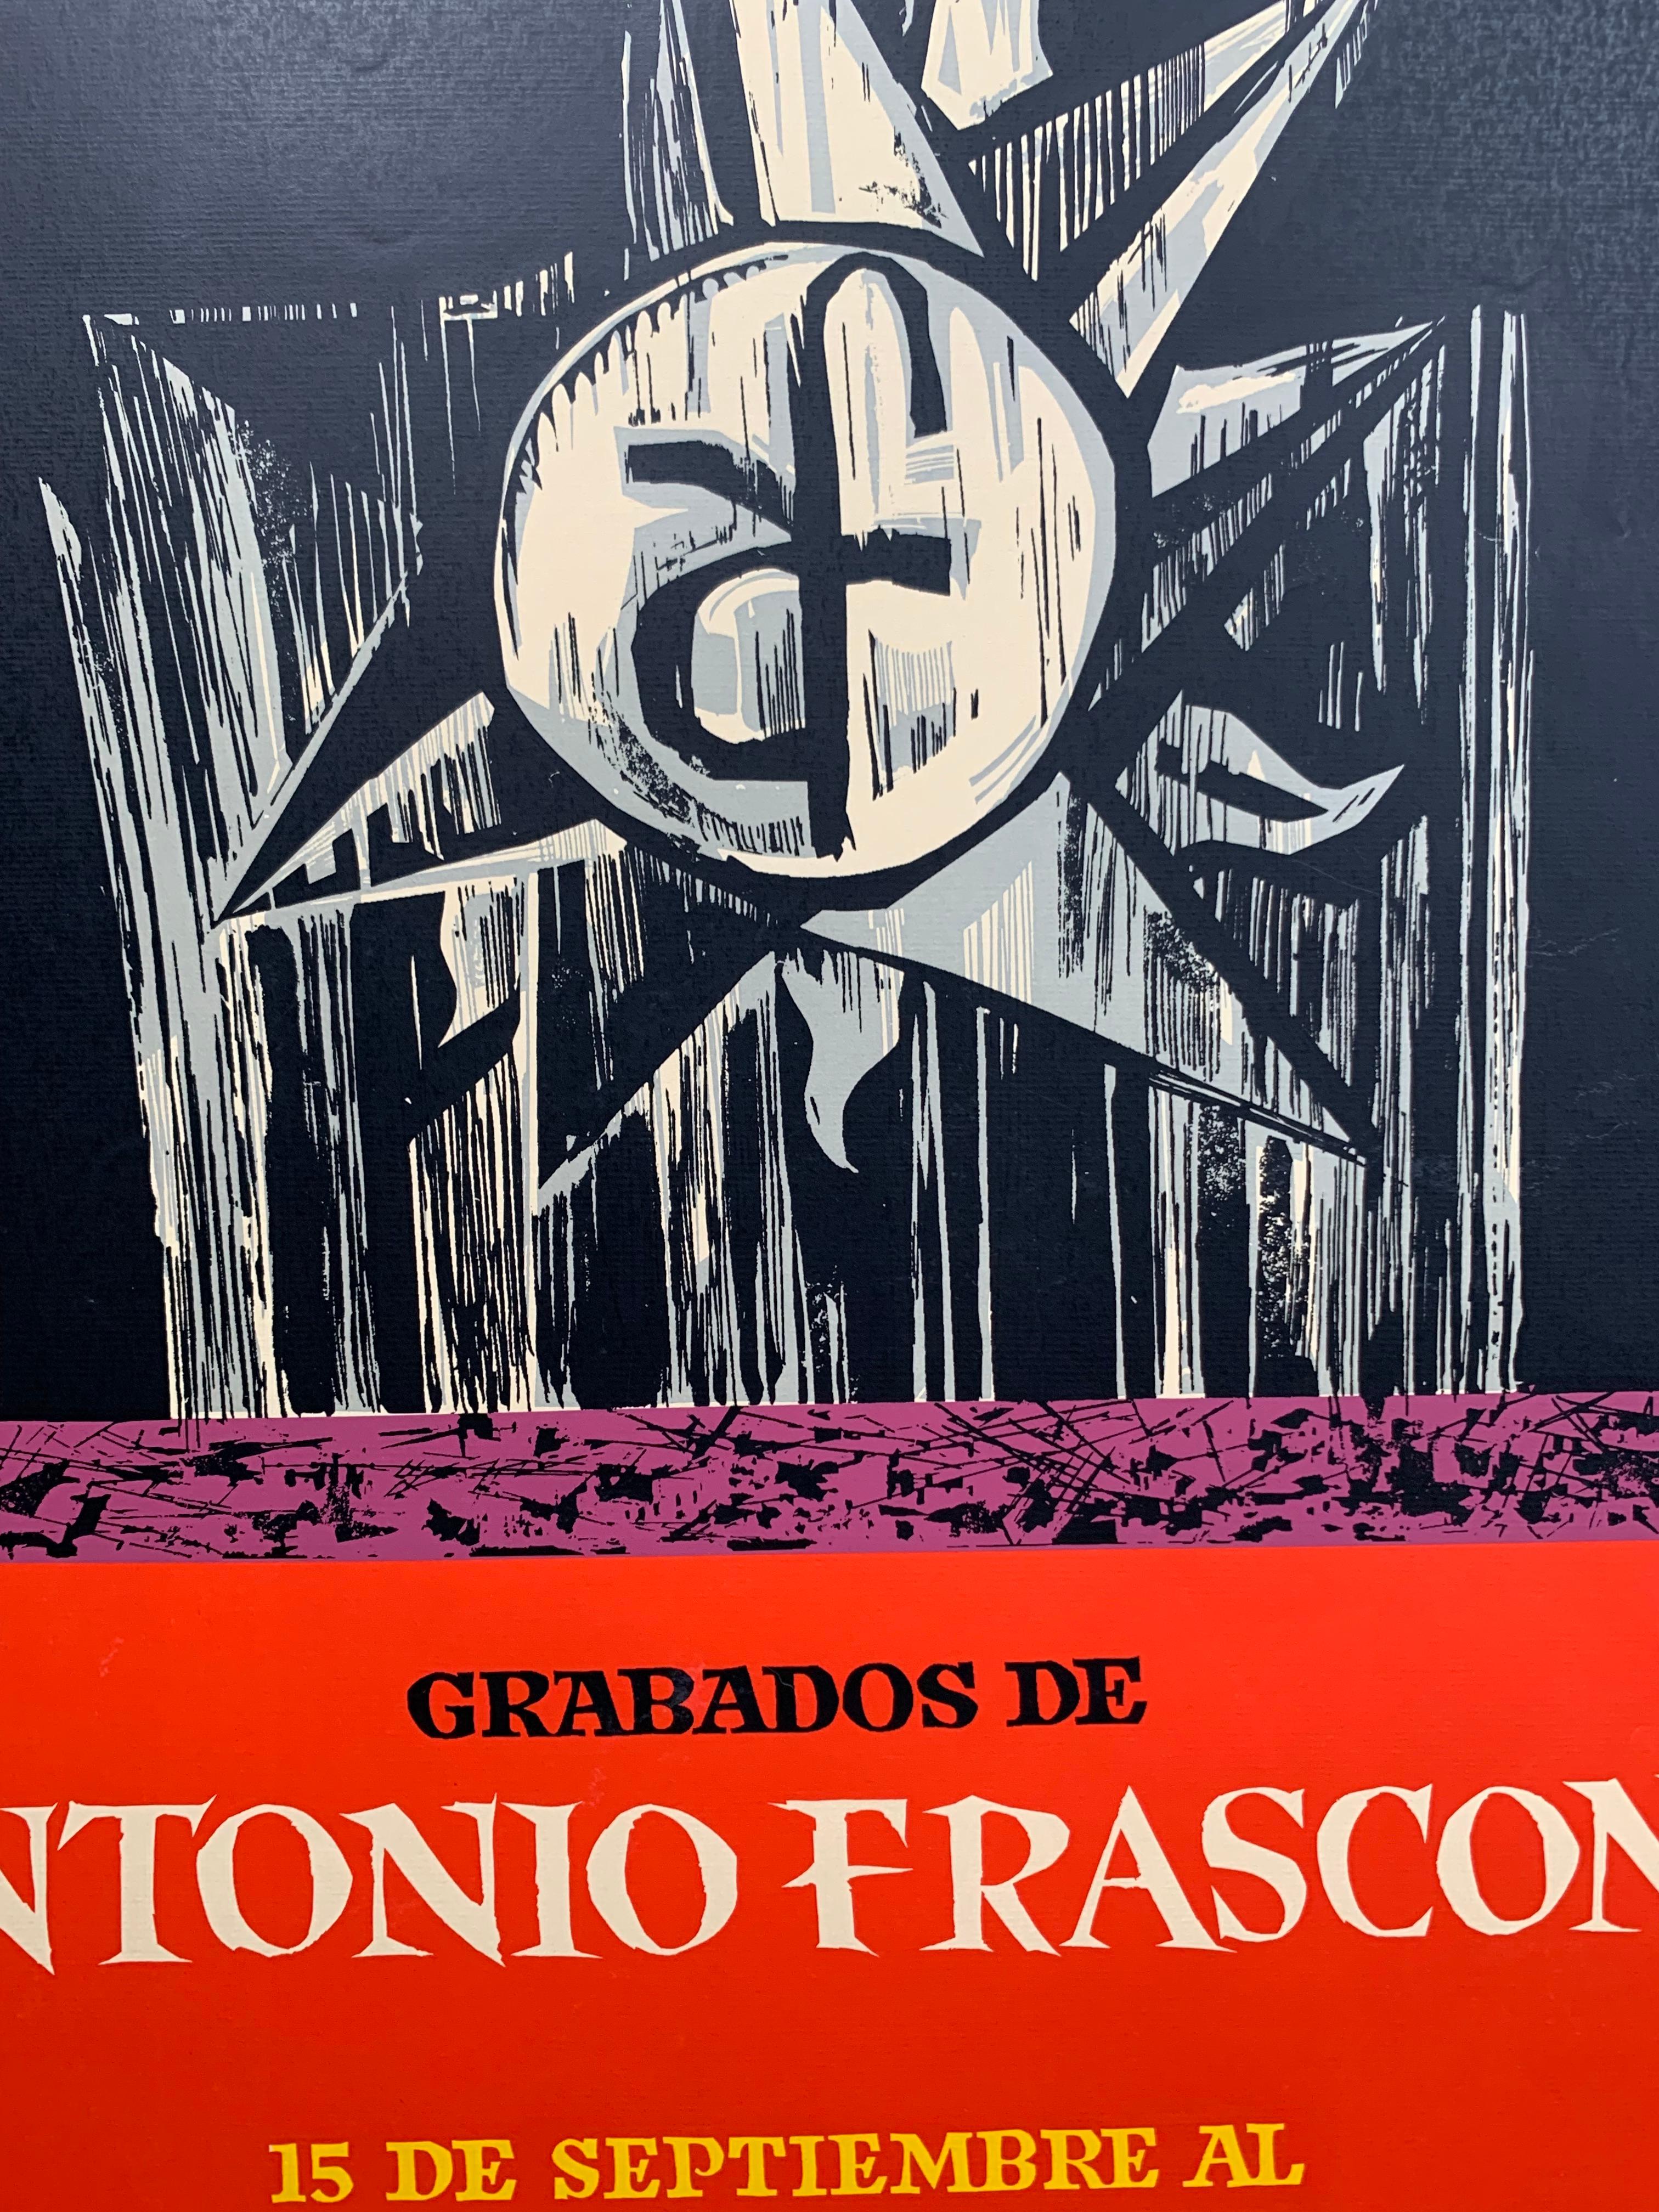 Rare affiche d'exposition de l'artiste portoricain Lorenzo Homar (1913-2004). Grabados de Antonio Frasconi, 1965. Affiche sérigraphiée sur papier. Usure et froissement mineurs comme indiqué sur les photos détaillées. Pas de taches, de déchirures ou